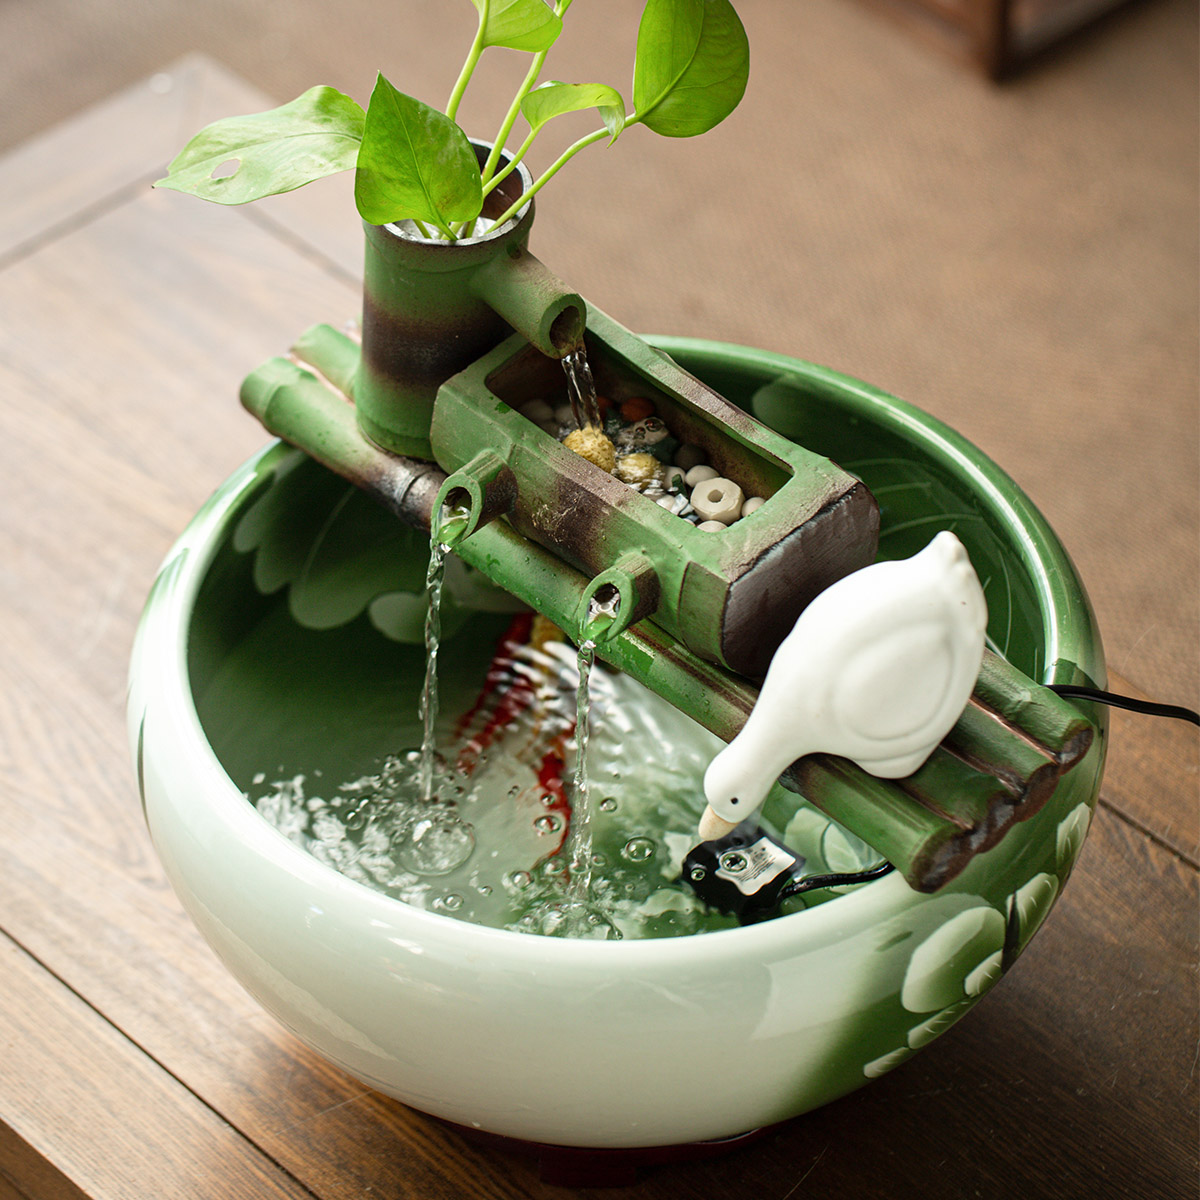 竹子流水器水循环鱼缸过滤器喷泉装饰摆件微景观景德镇陶瓷仿竹节